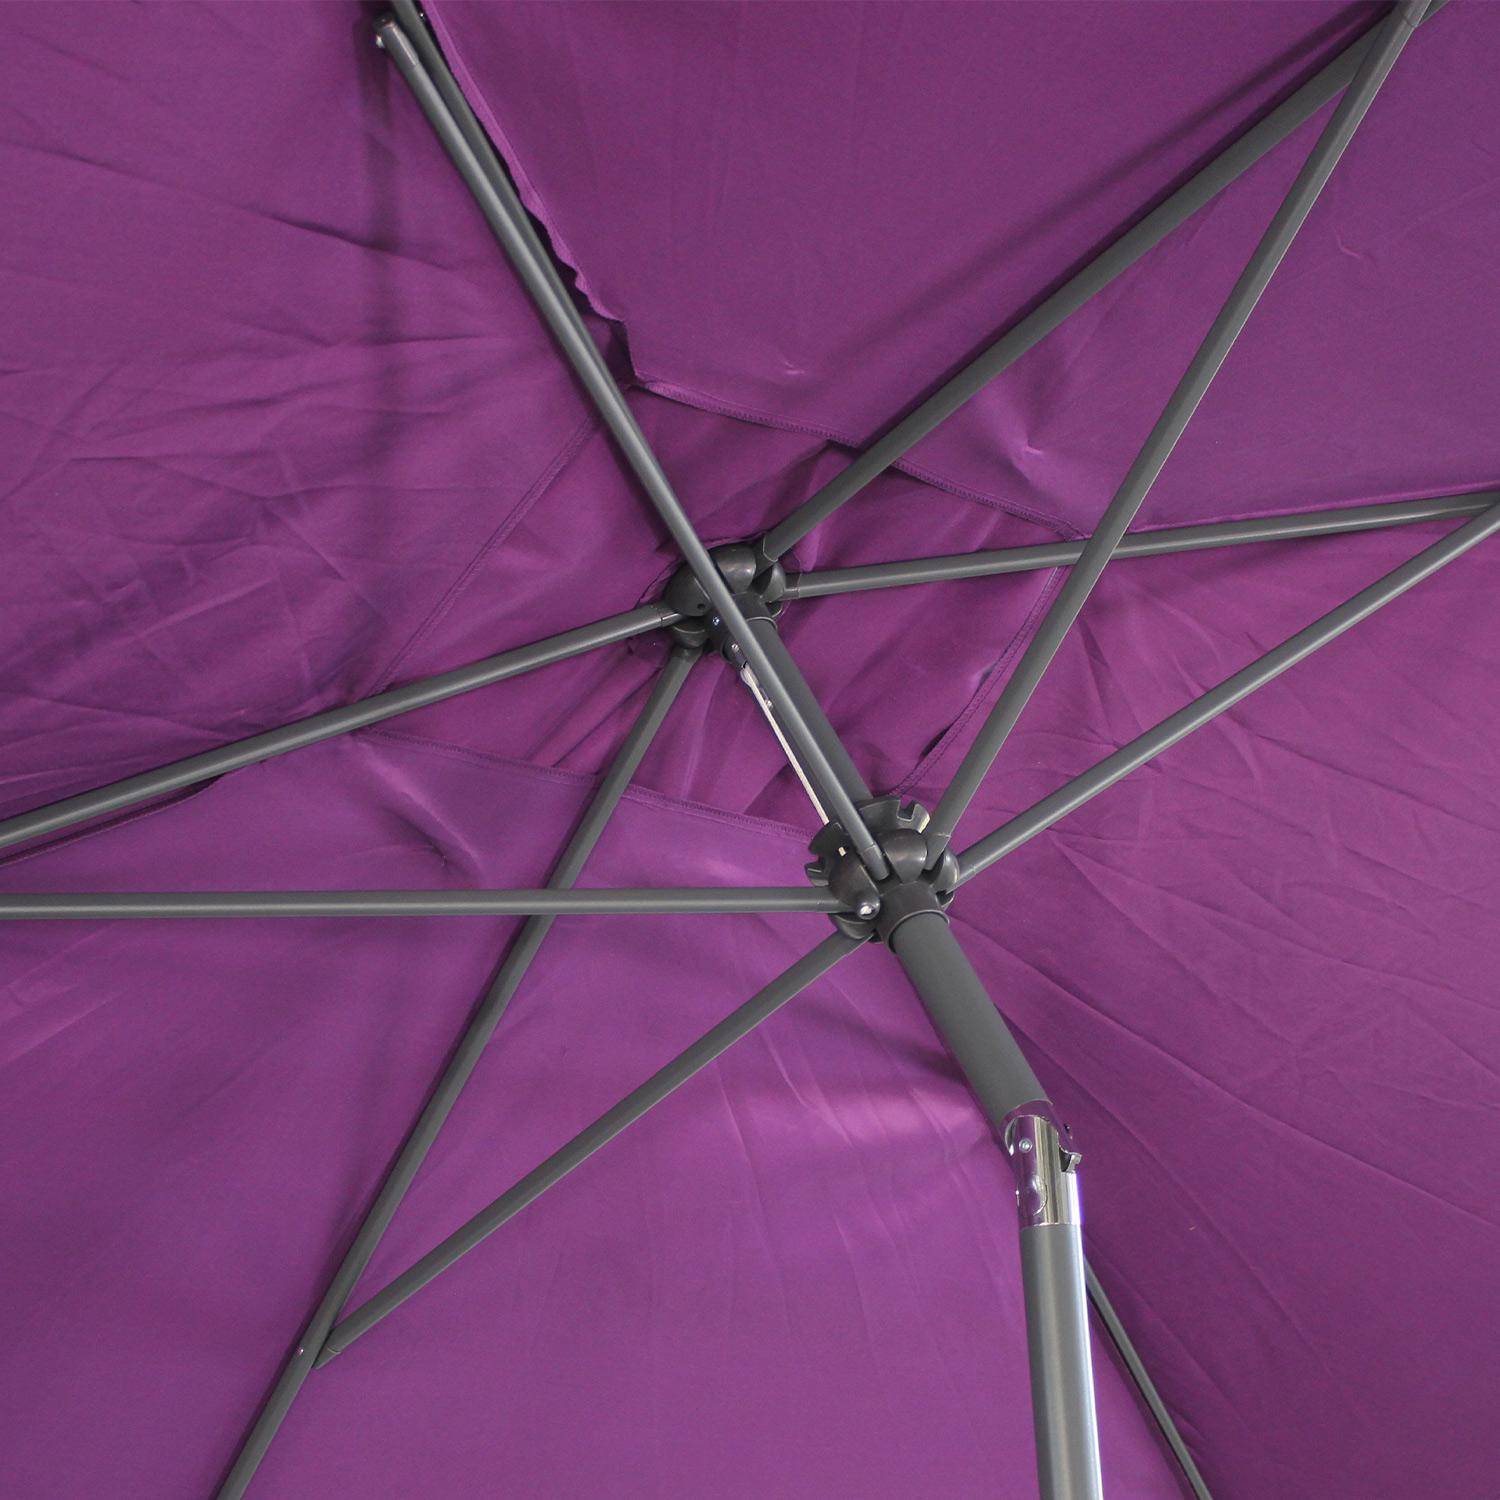 Ombrellone dritto, rettangolare, dimensioni 2x3m - modello: Touquet, colore: Prugna - palo centrale in alluminio, orientabile, e manovella di apertura Photo6